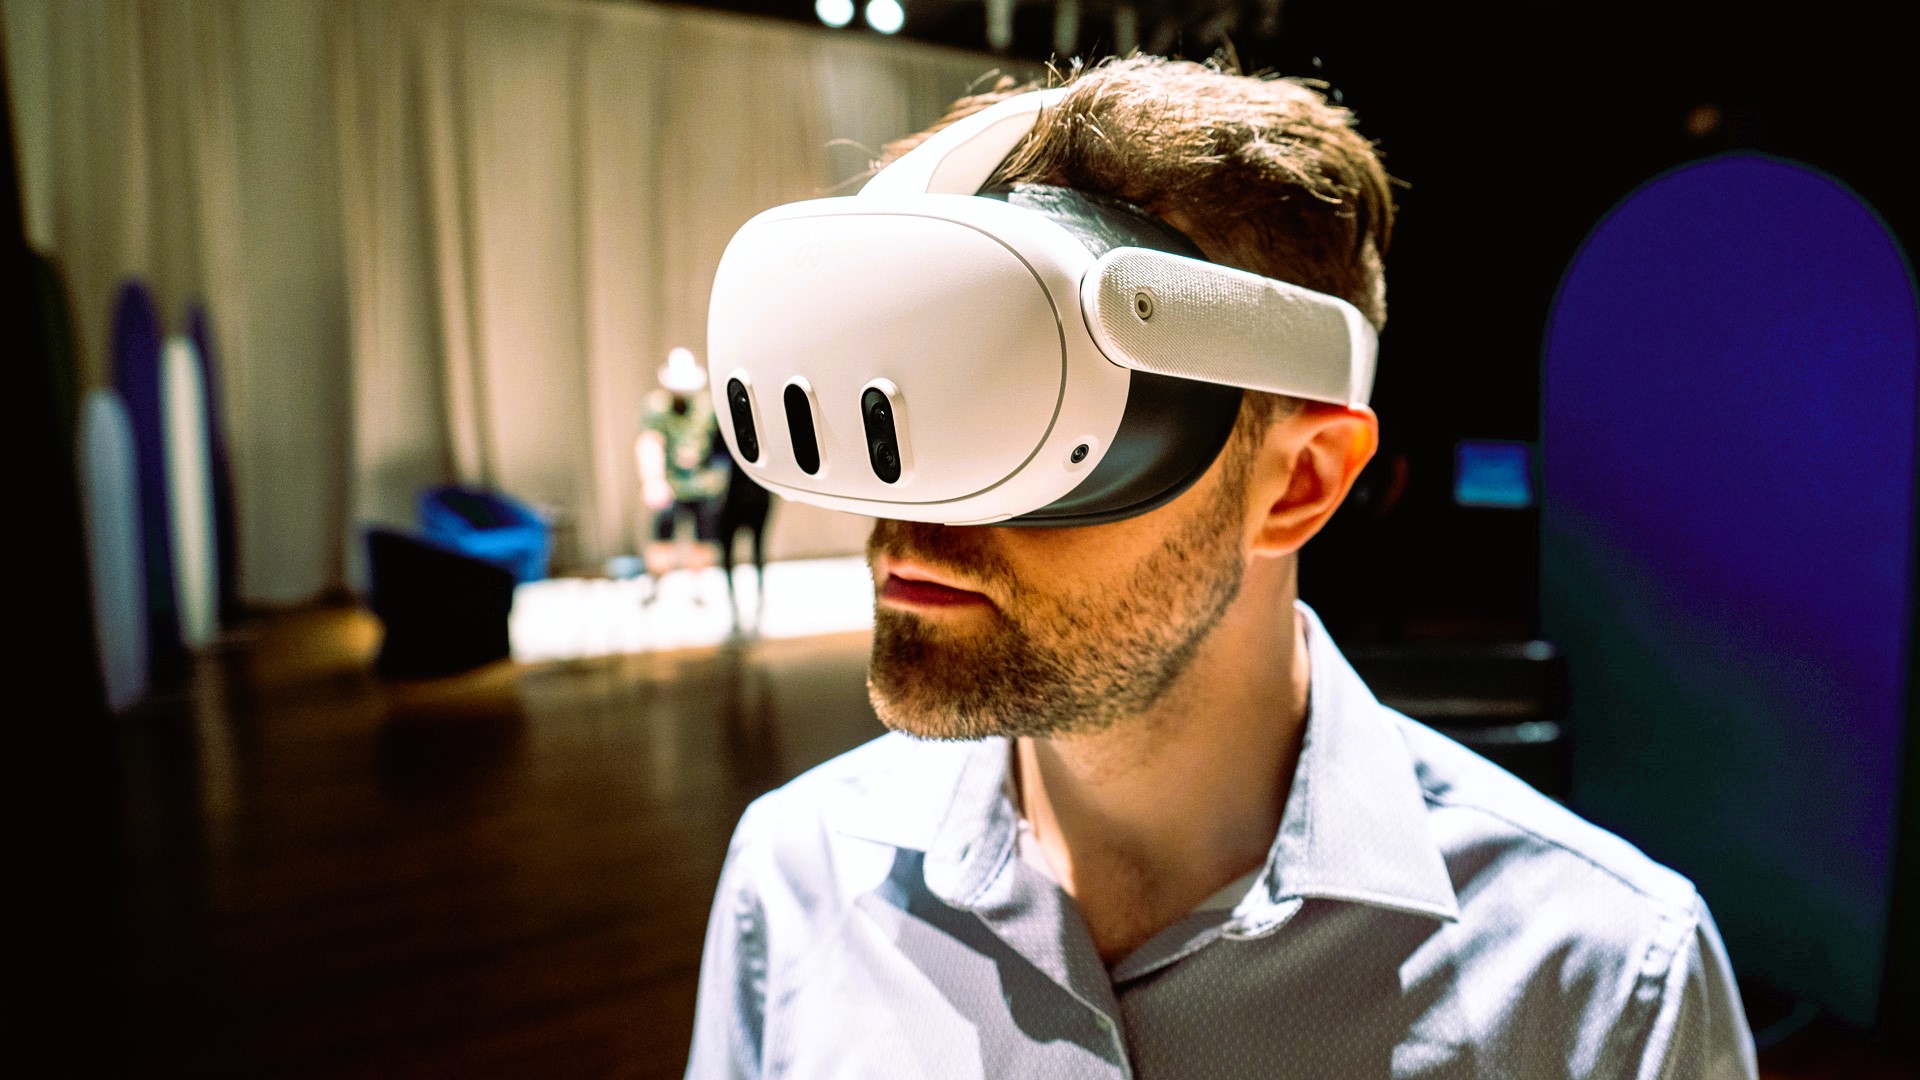 GTA in Virtual Reality